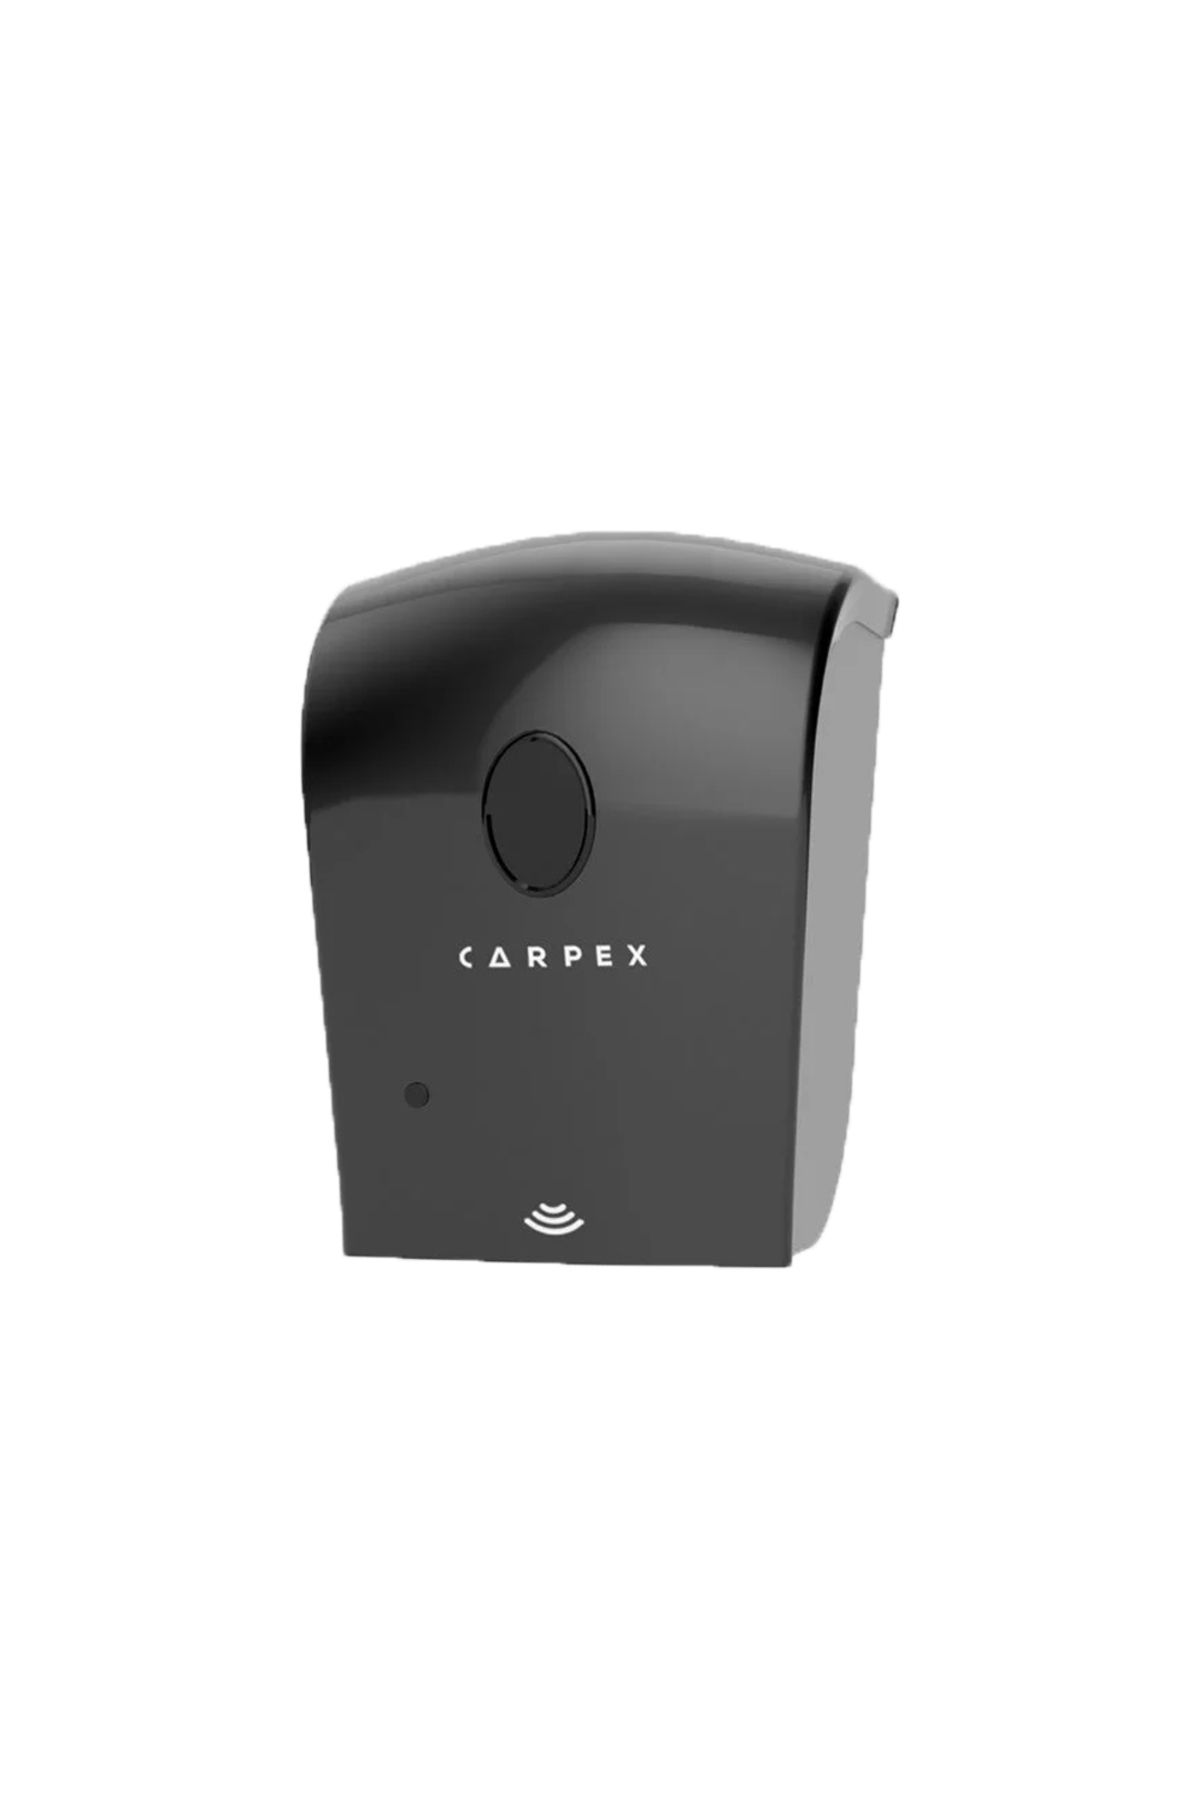 Carpex Nature Otomatik Sensörlü Köpük Sabun Dispenseri Siyah Hazneli